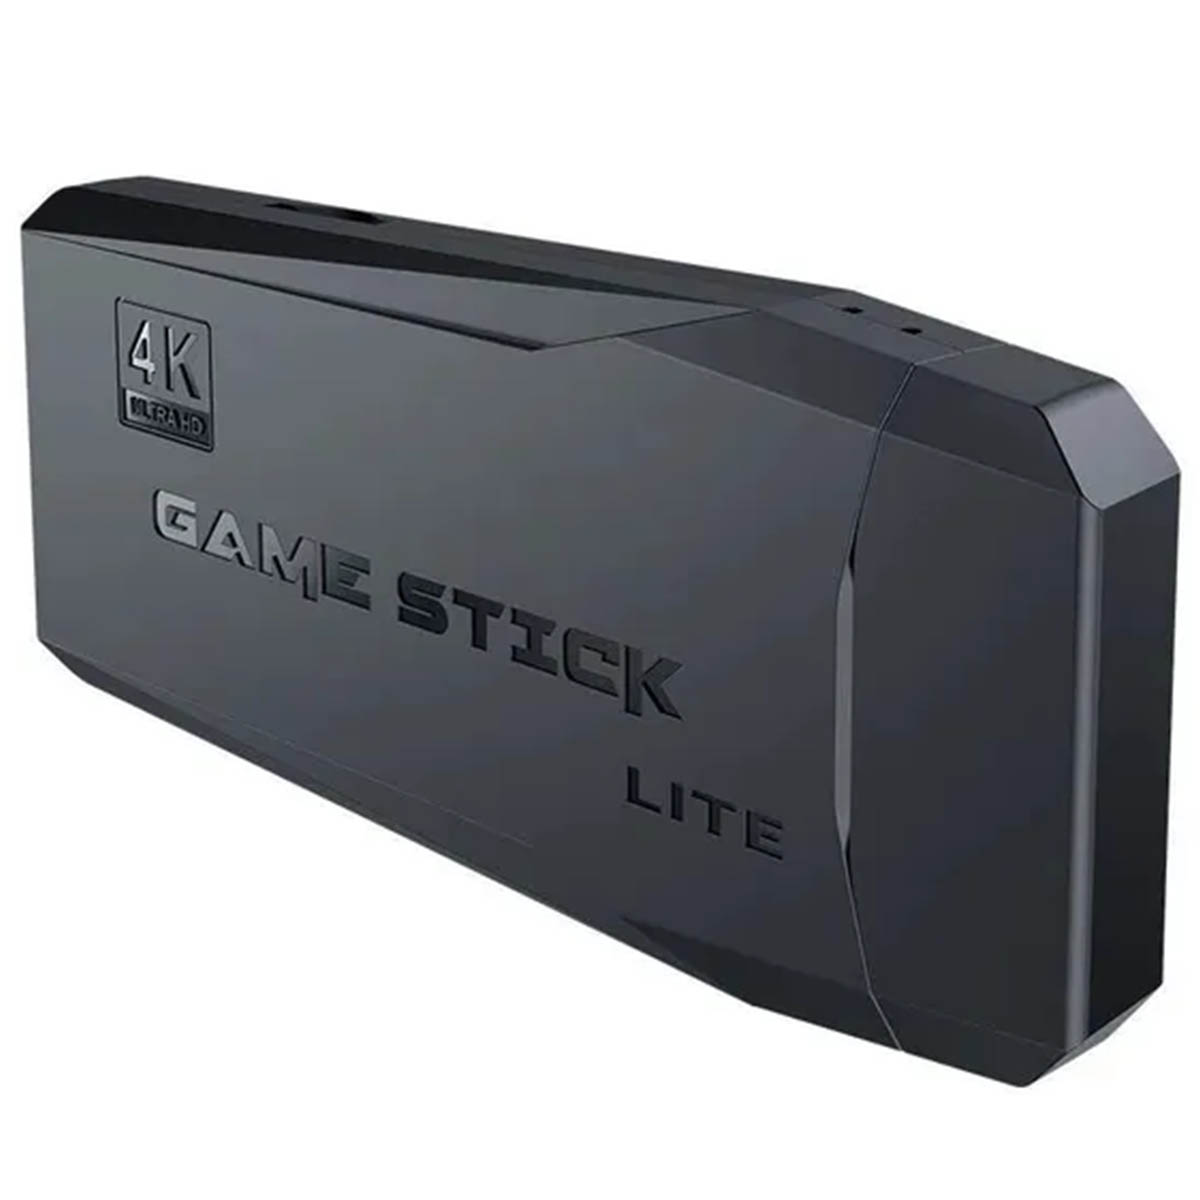 Игровая приставка Lite Game 2, более 5000 игр, 2 беспроводных геймпада (джостик), карта памяти 64 Gb, цвет черный